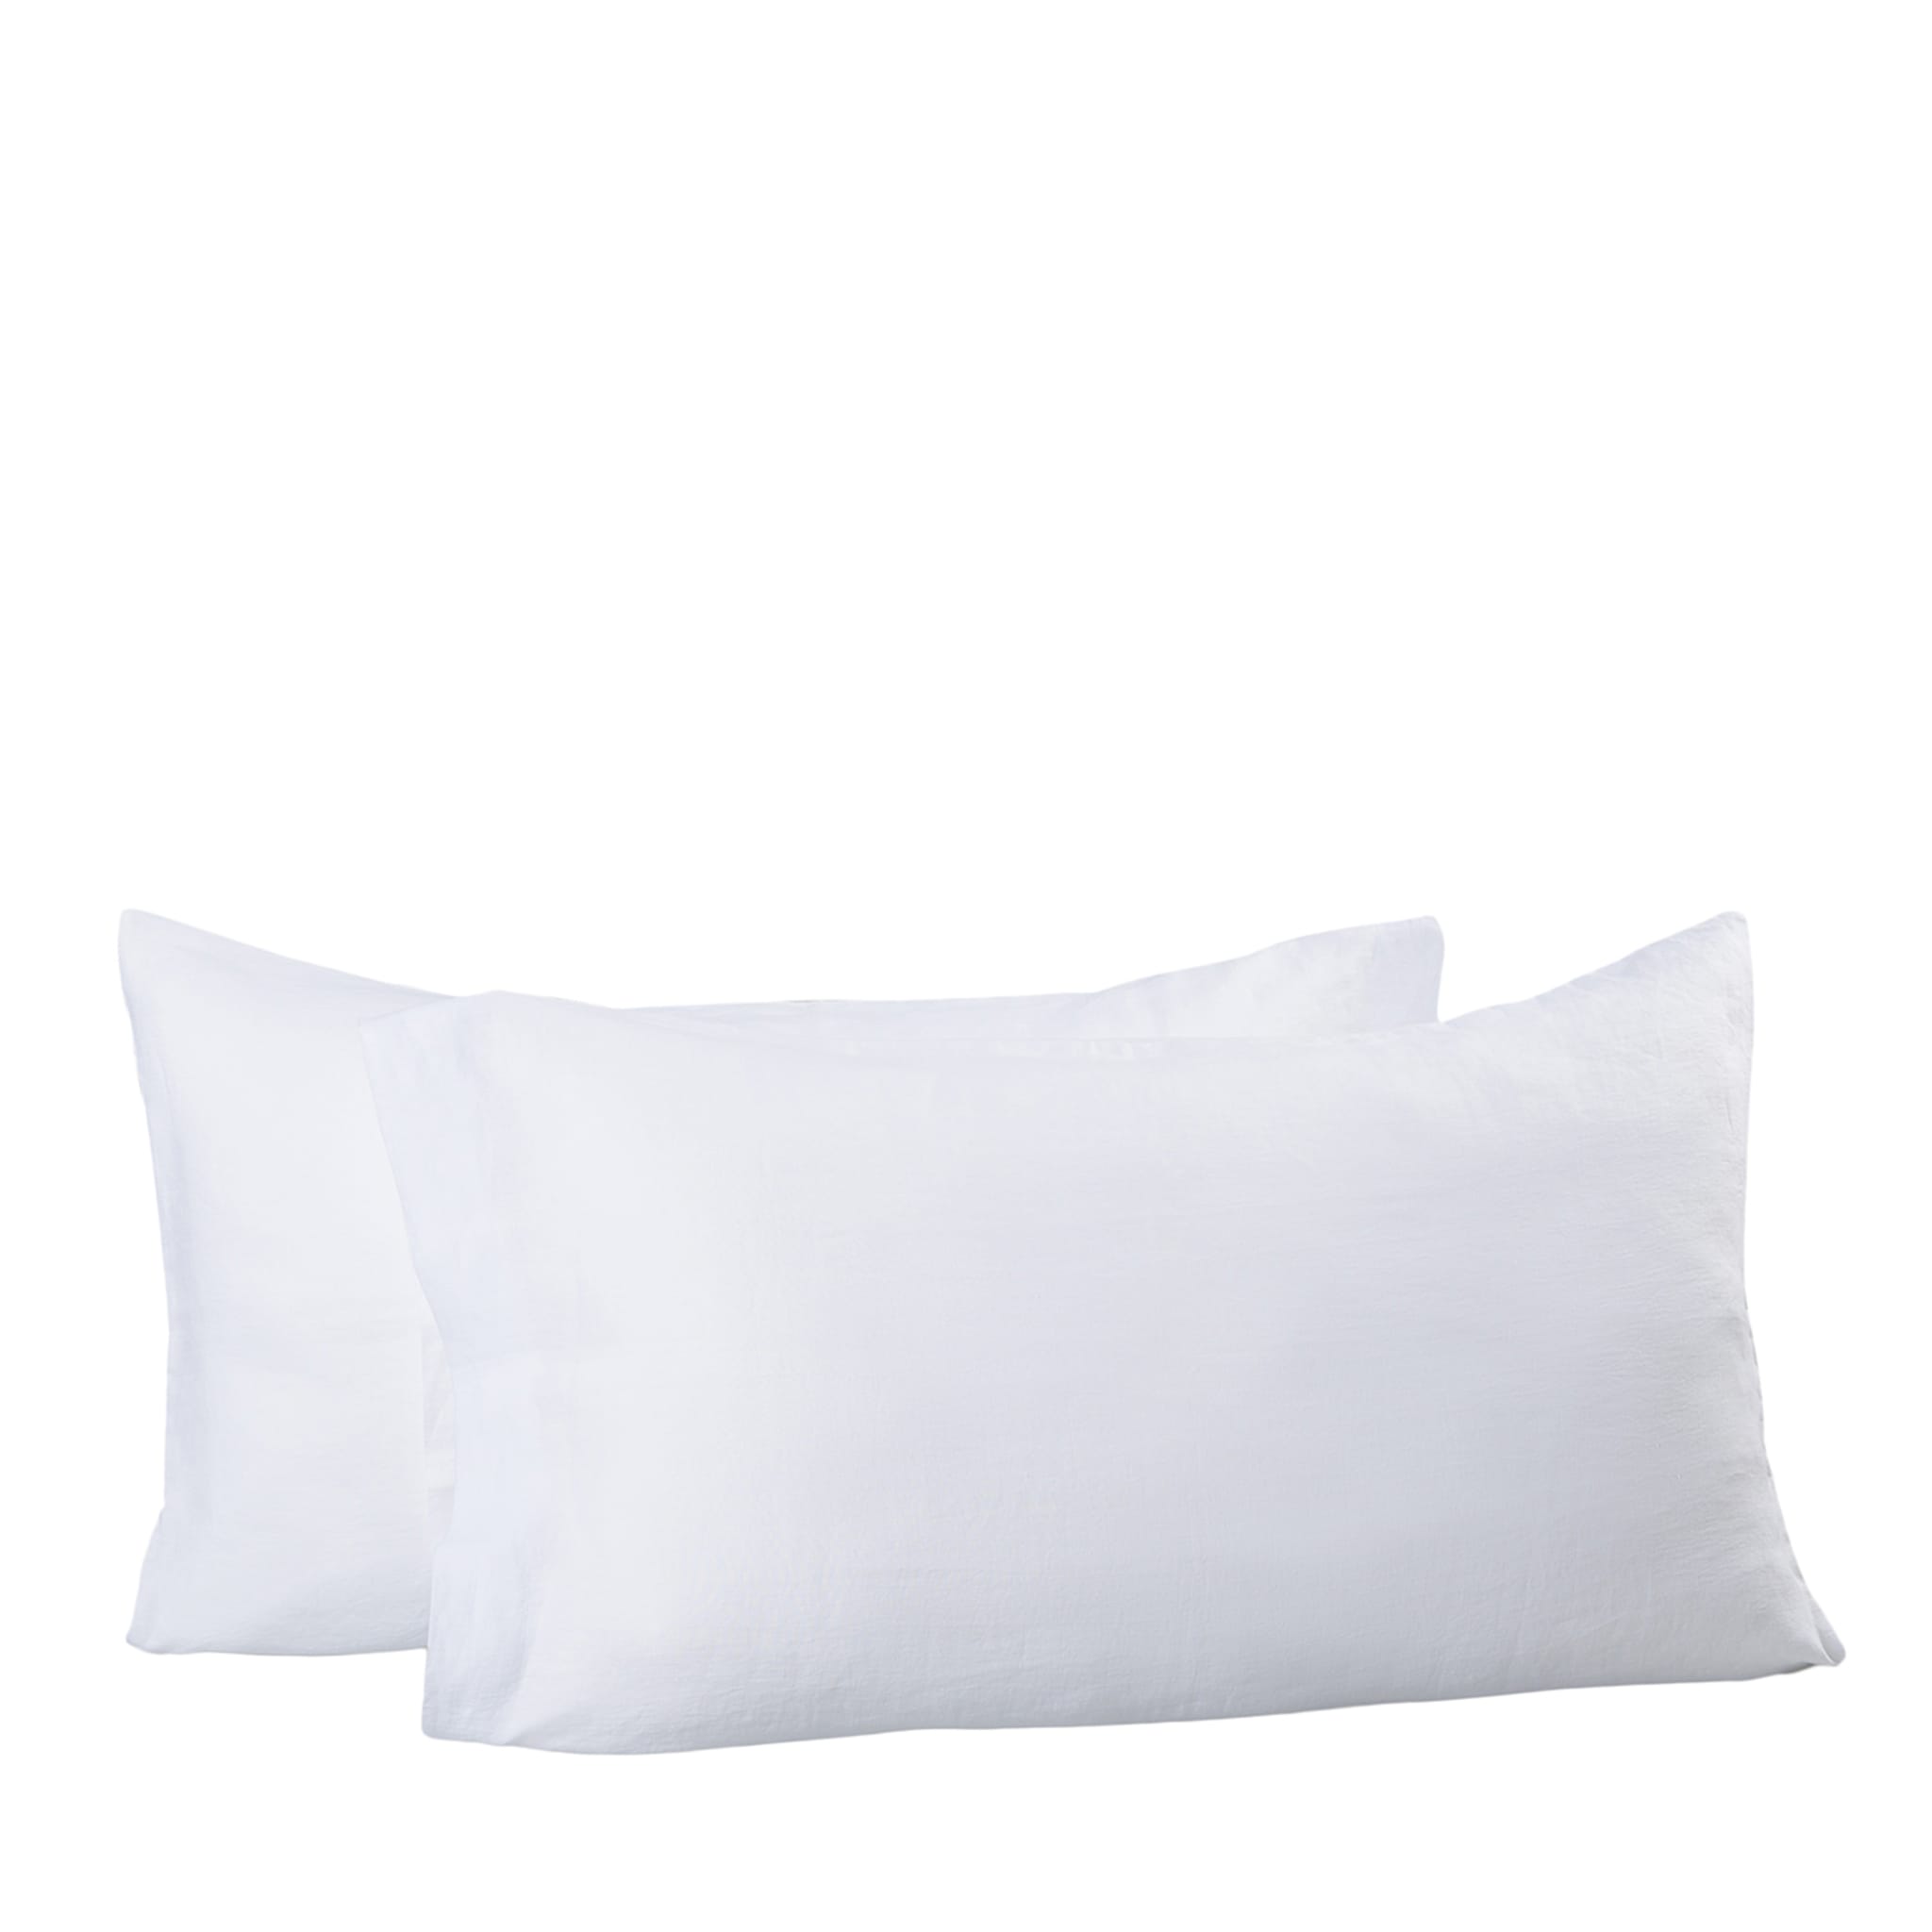 Kanapa White Set of 2 Pillowcases - Main view